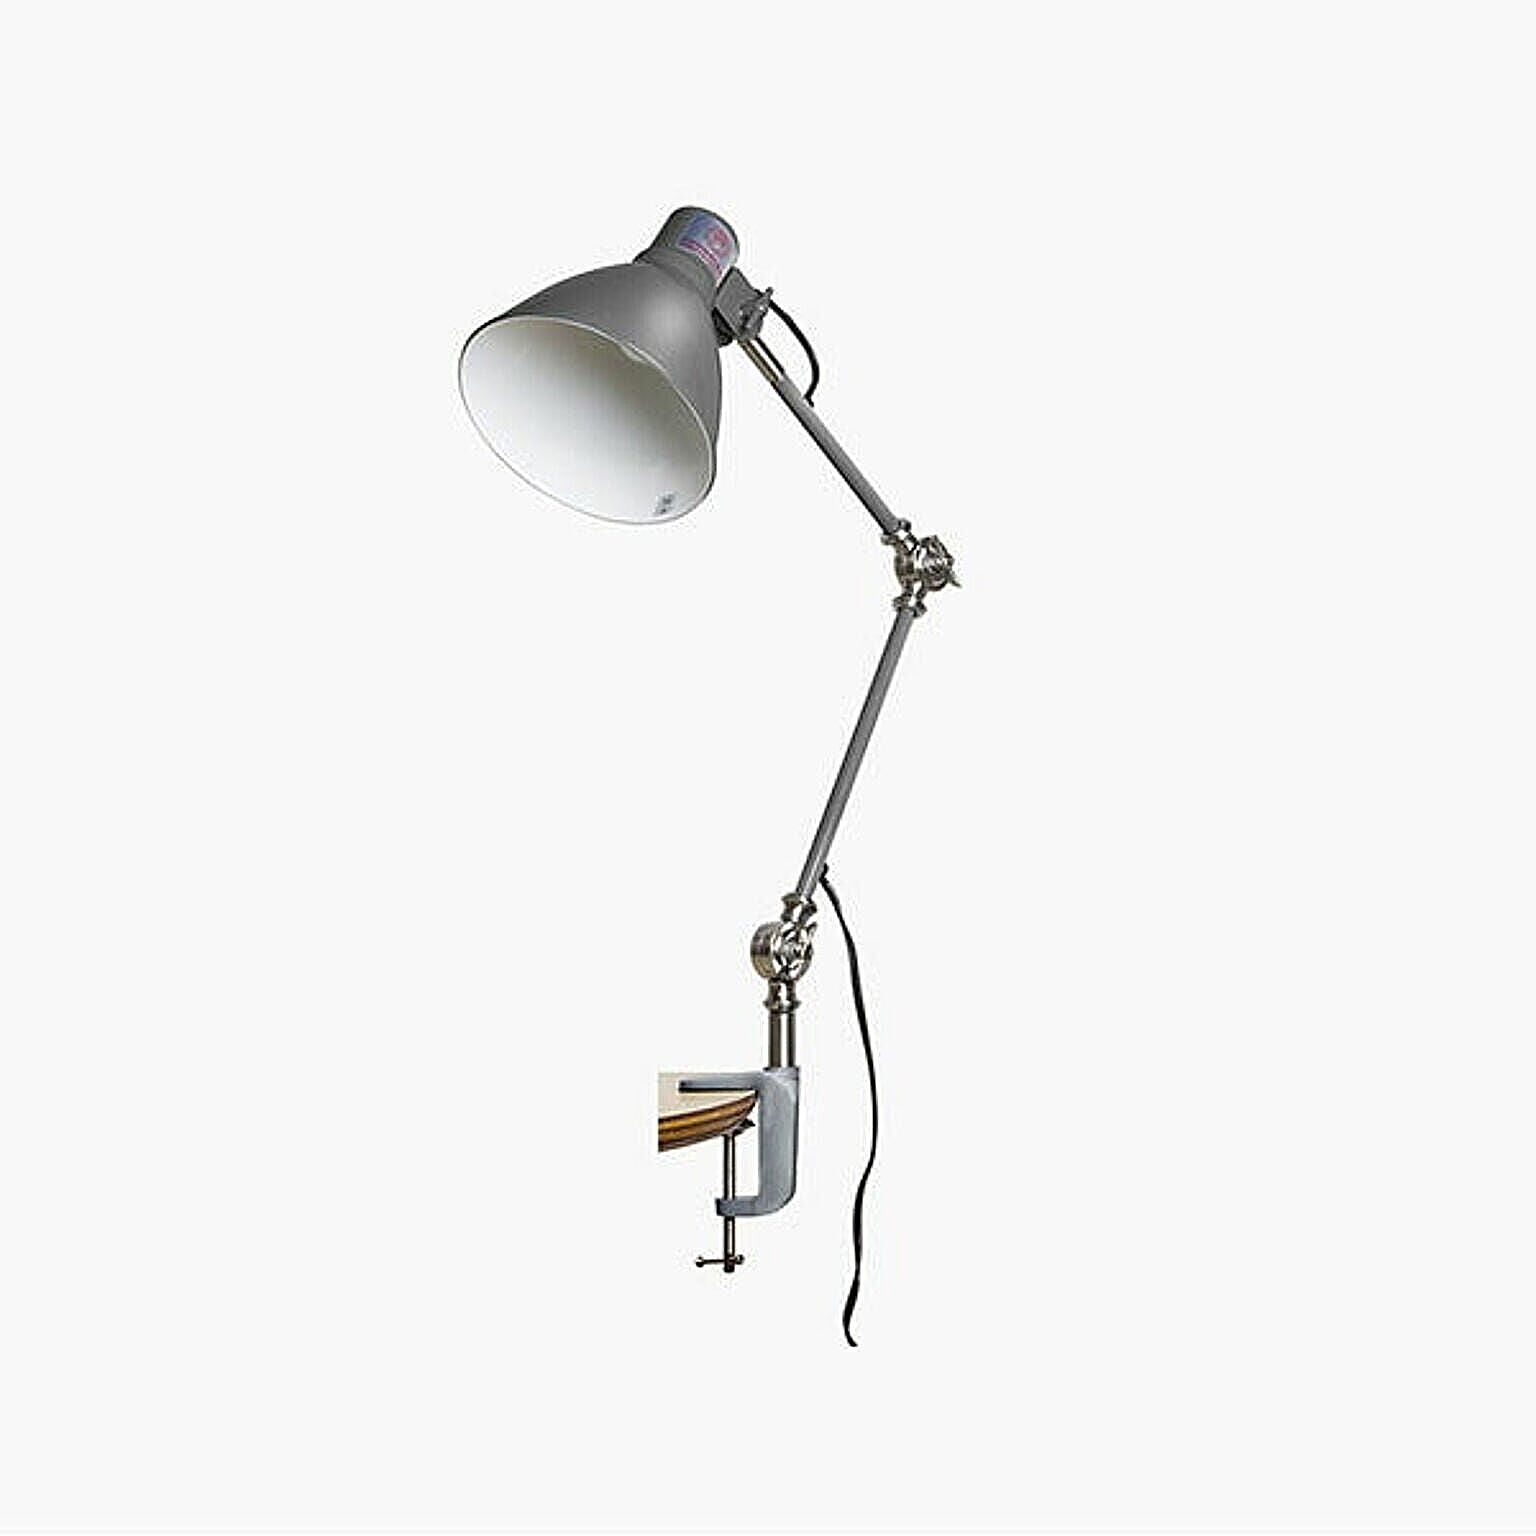 INDUSTRY DESK LAMP インダストリーデスクランプ EN-007D クランプ式 デスクライト 卓上照明